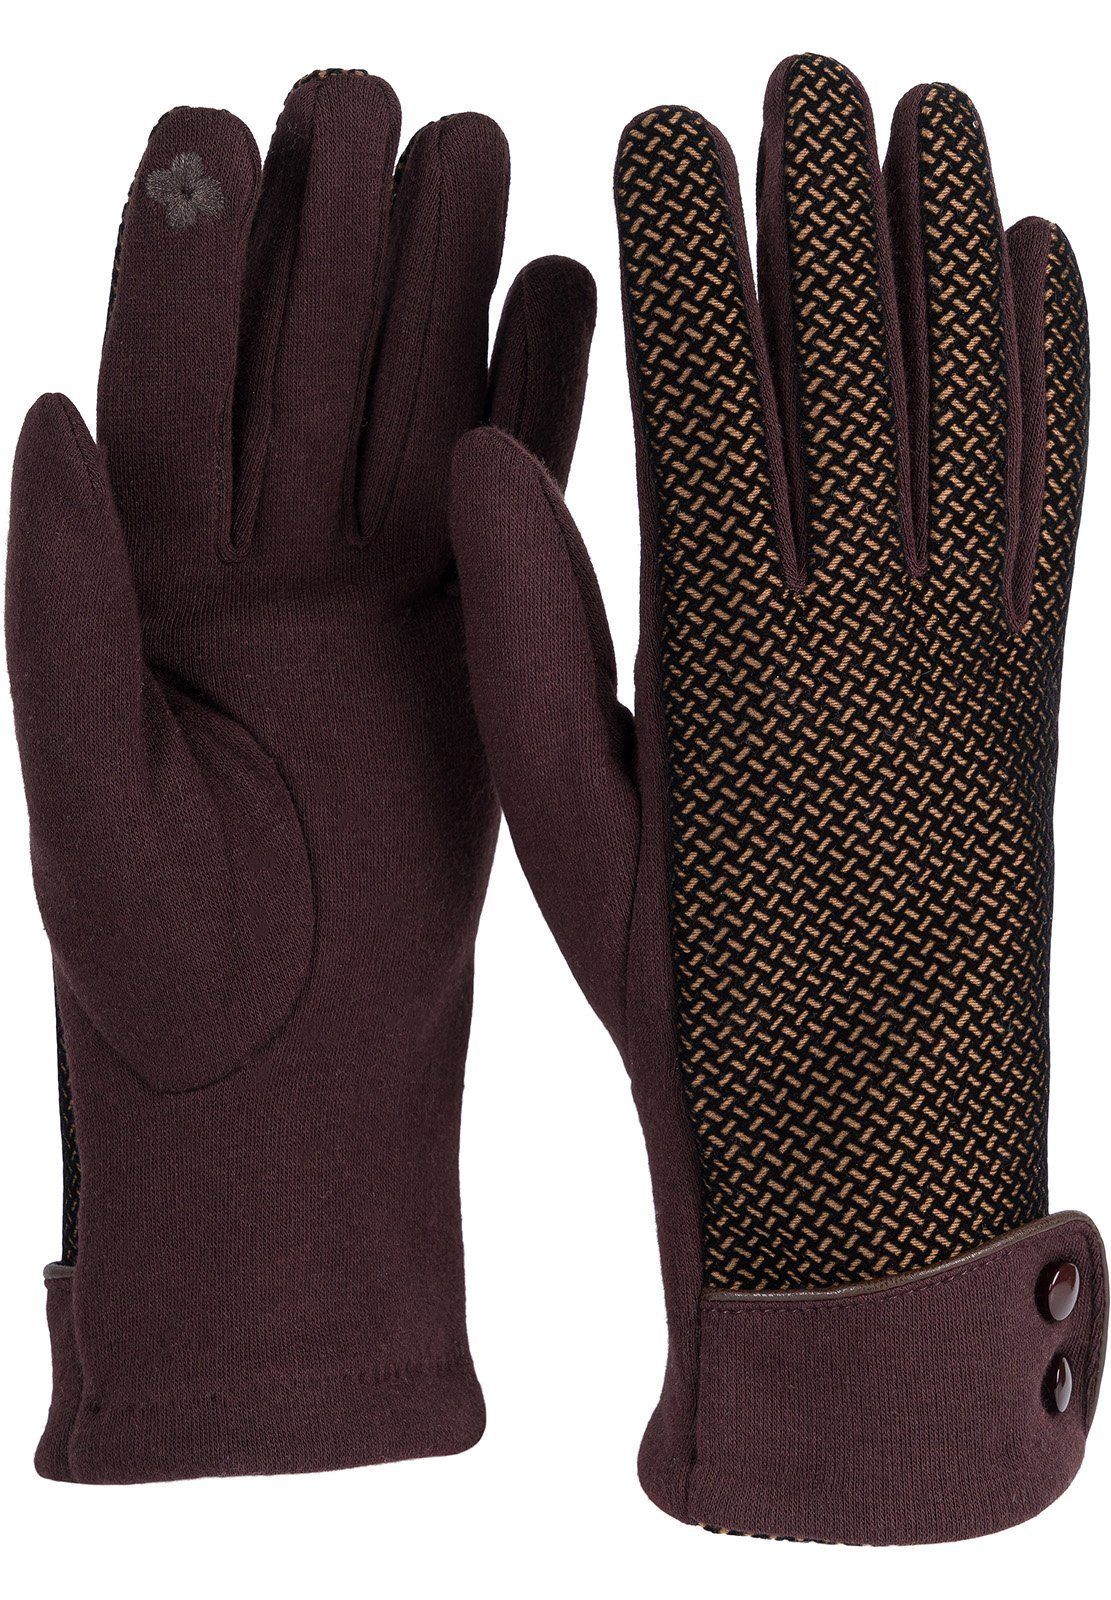 Spitze styleBREAKER Baumwollhandschuhe Touchscreen weichem Dunkelbraun mit Riffel Handschuhe Muster